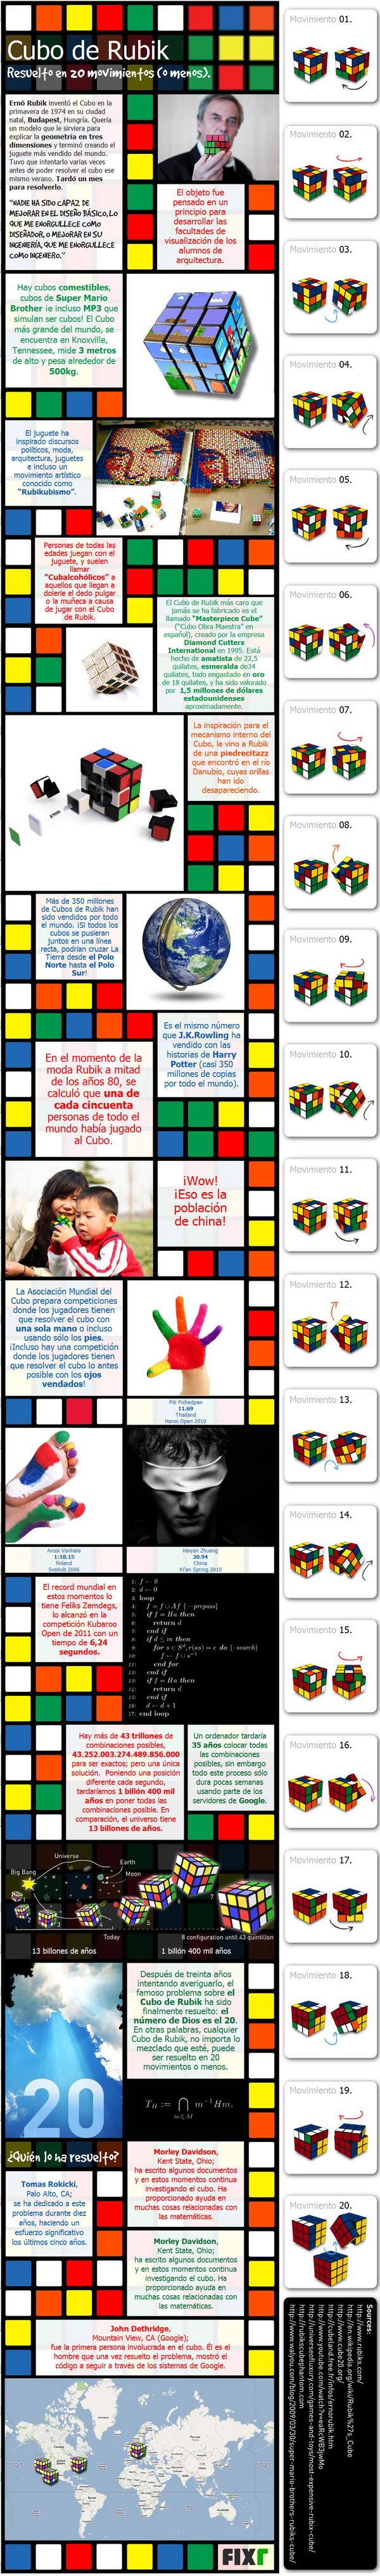 Resuelve el cubo de Rubik en 20 movimientos o menos [Infografía en español] 1